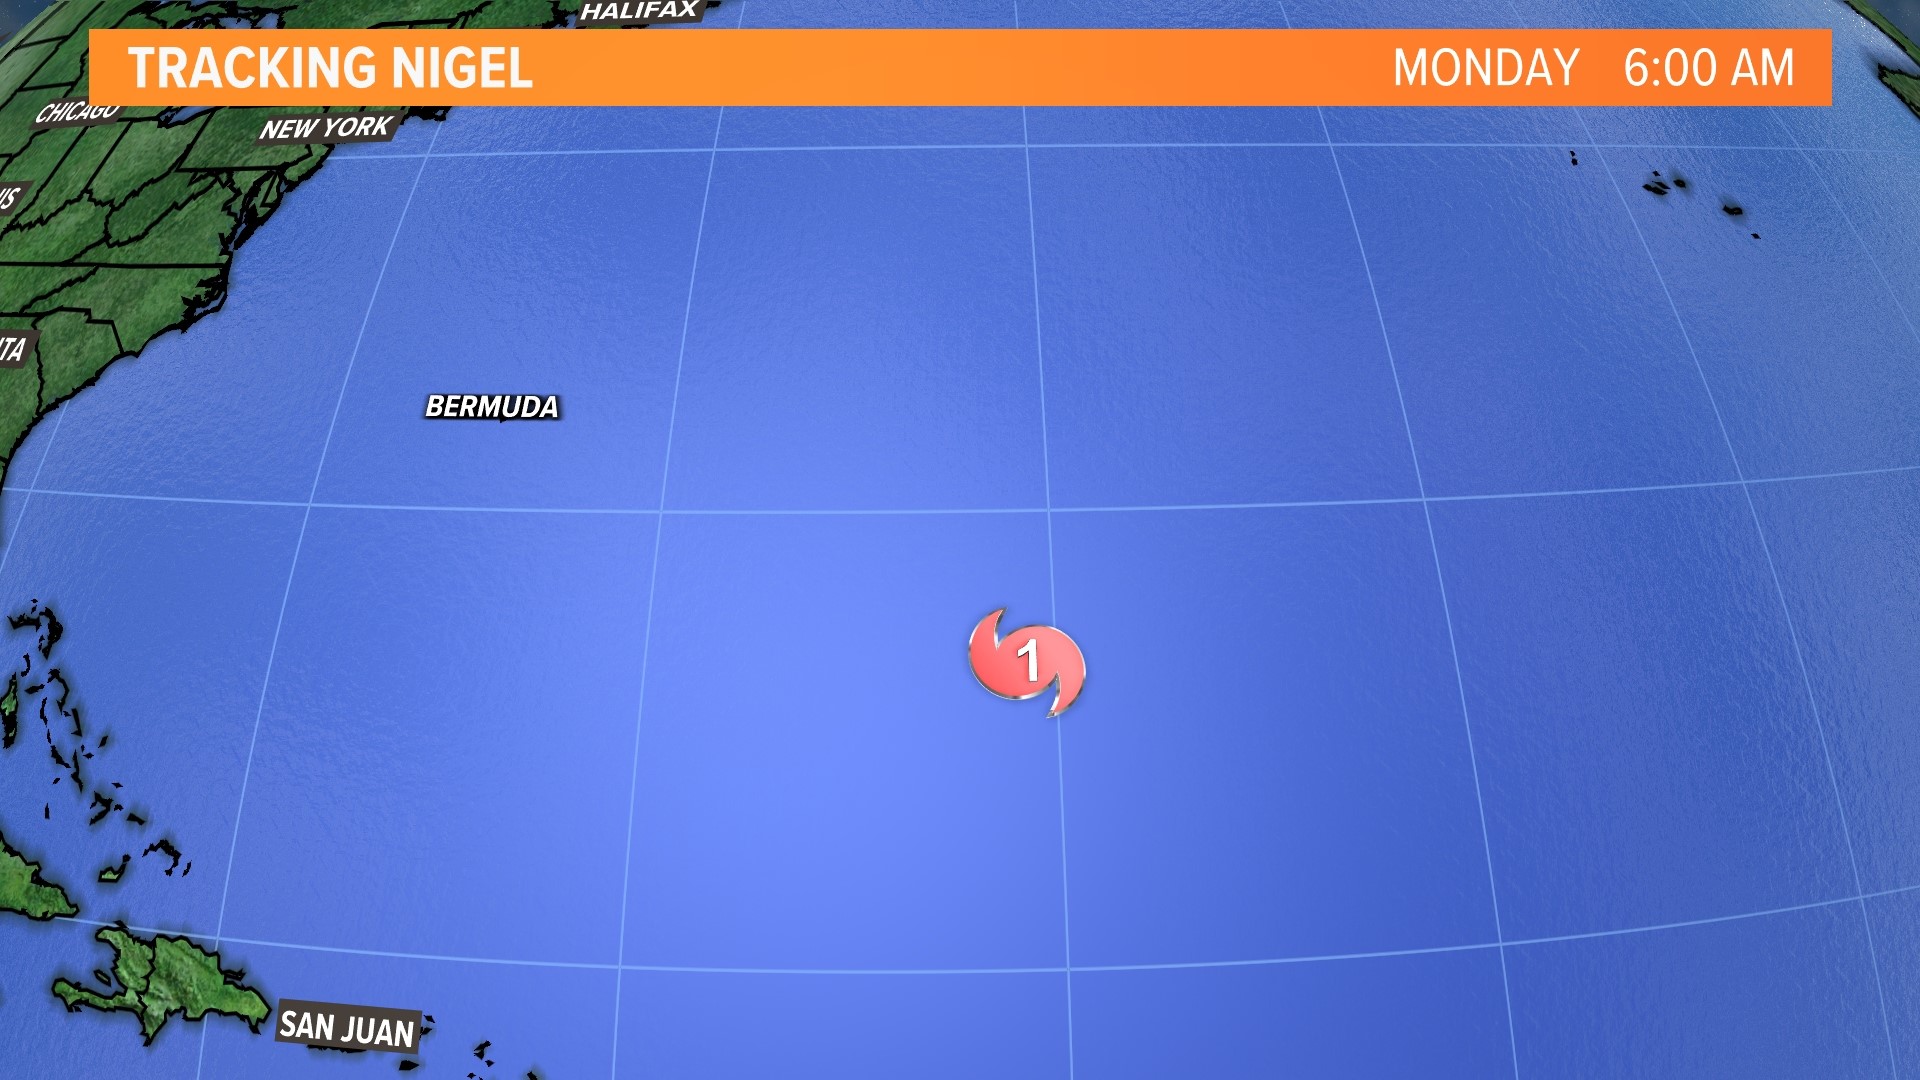 Track of Hurricane Nigel